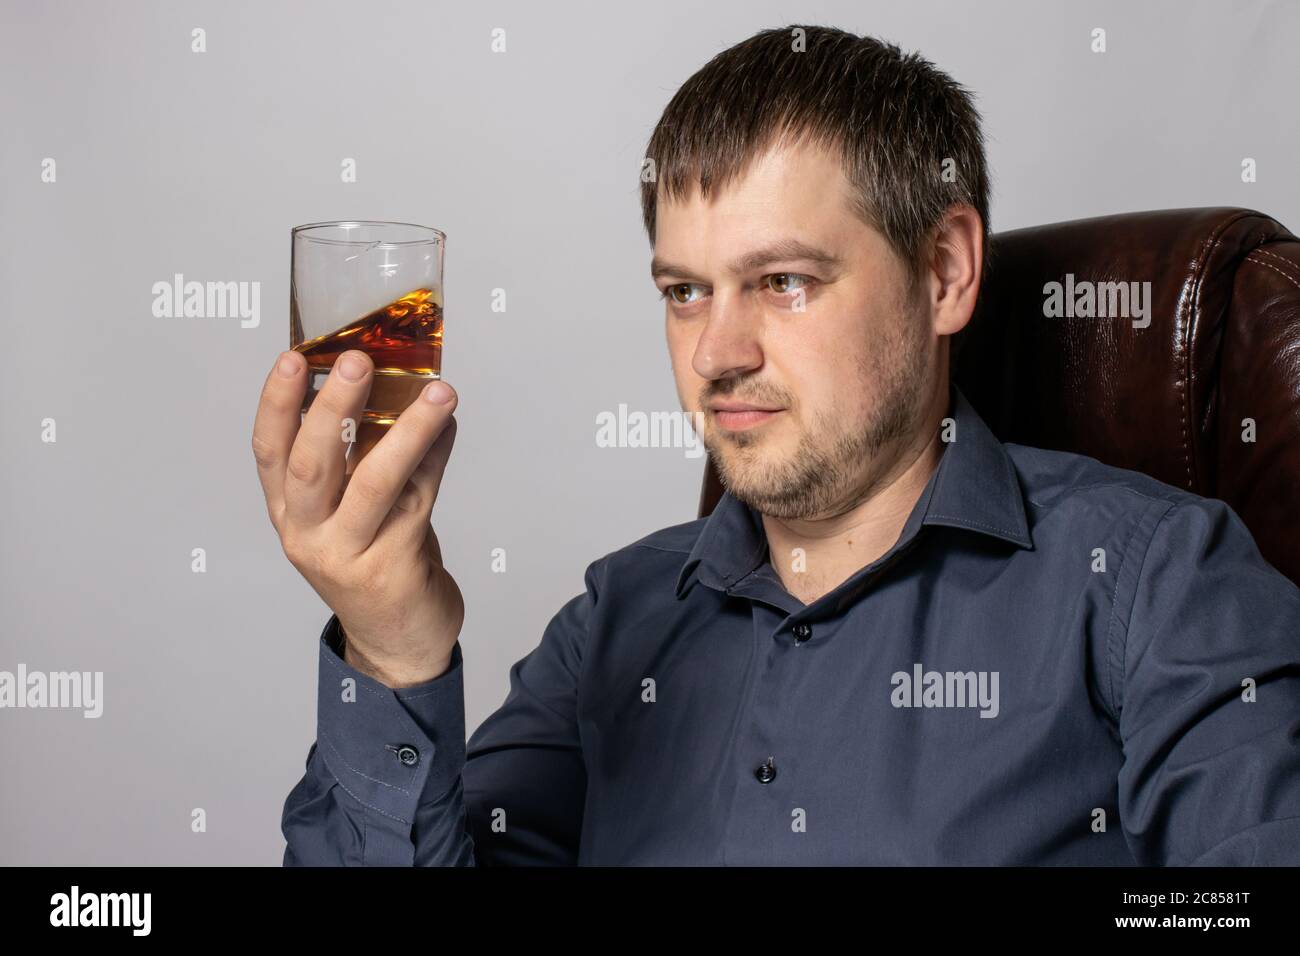 Ein hübscher junger Mann von 30-35 Jahren im Hemd sitzt auf einem braunen Ledersessel und hält ein Glas Whiskey in der Hand. Stockfoto